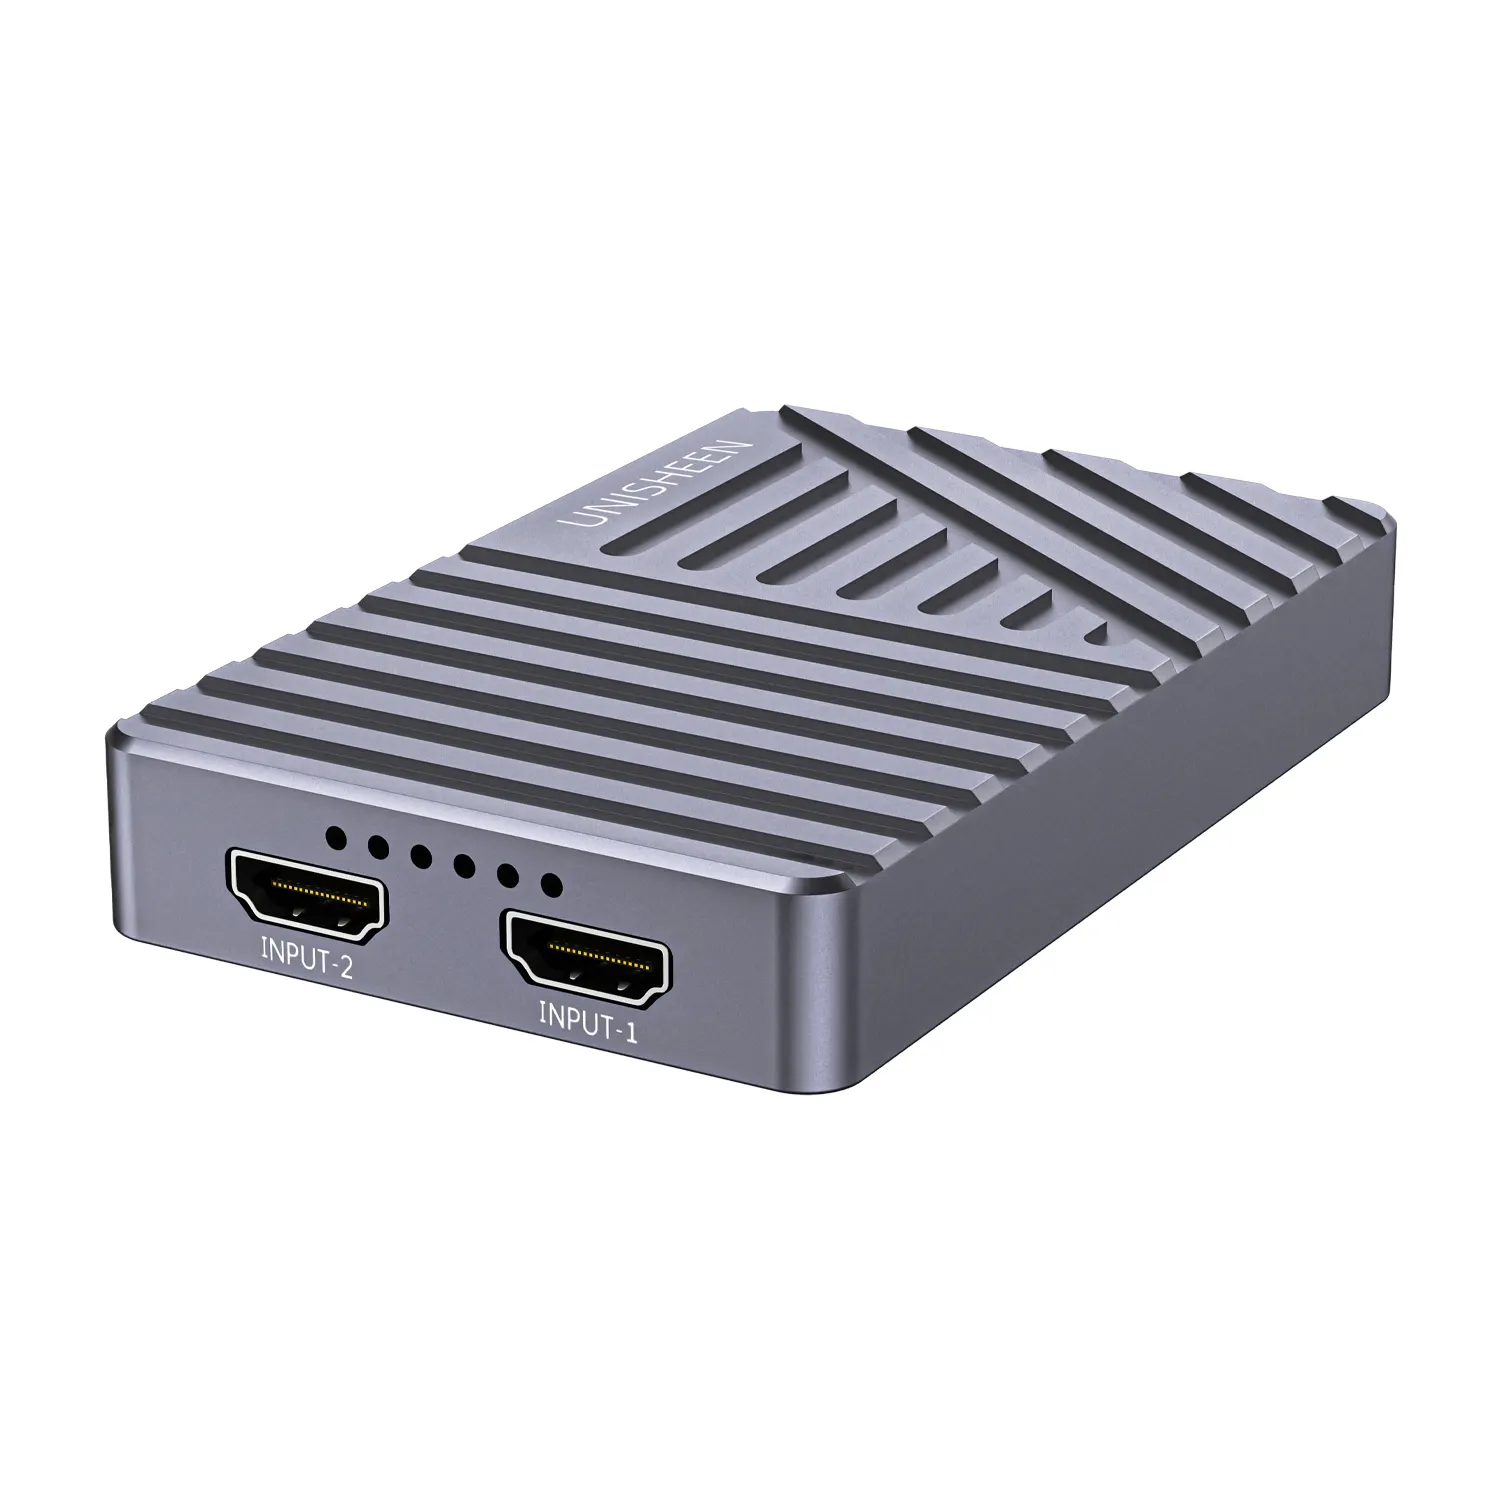 Unisheen USB3.1 Gen2 trò chơi trực tuyến phát sóng trực tiếp OBS VMIX wirecast Xsplit USB3.0 60fps kép 4K HDMI video chụp thẻ hộp